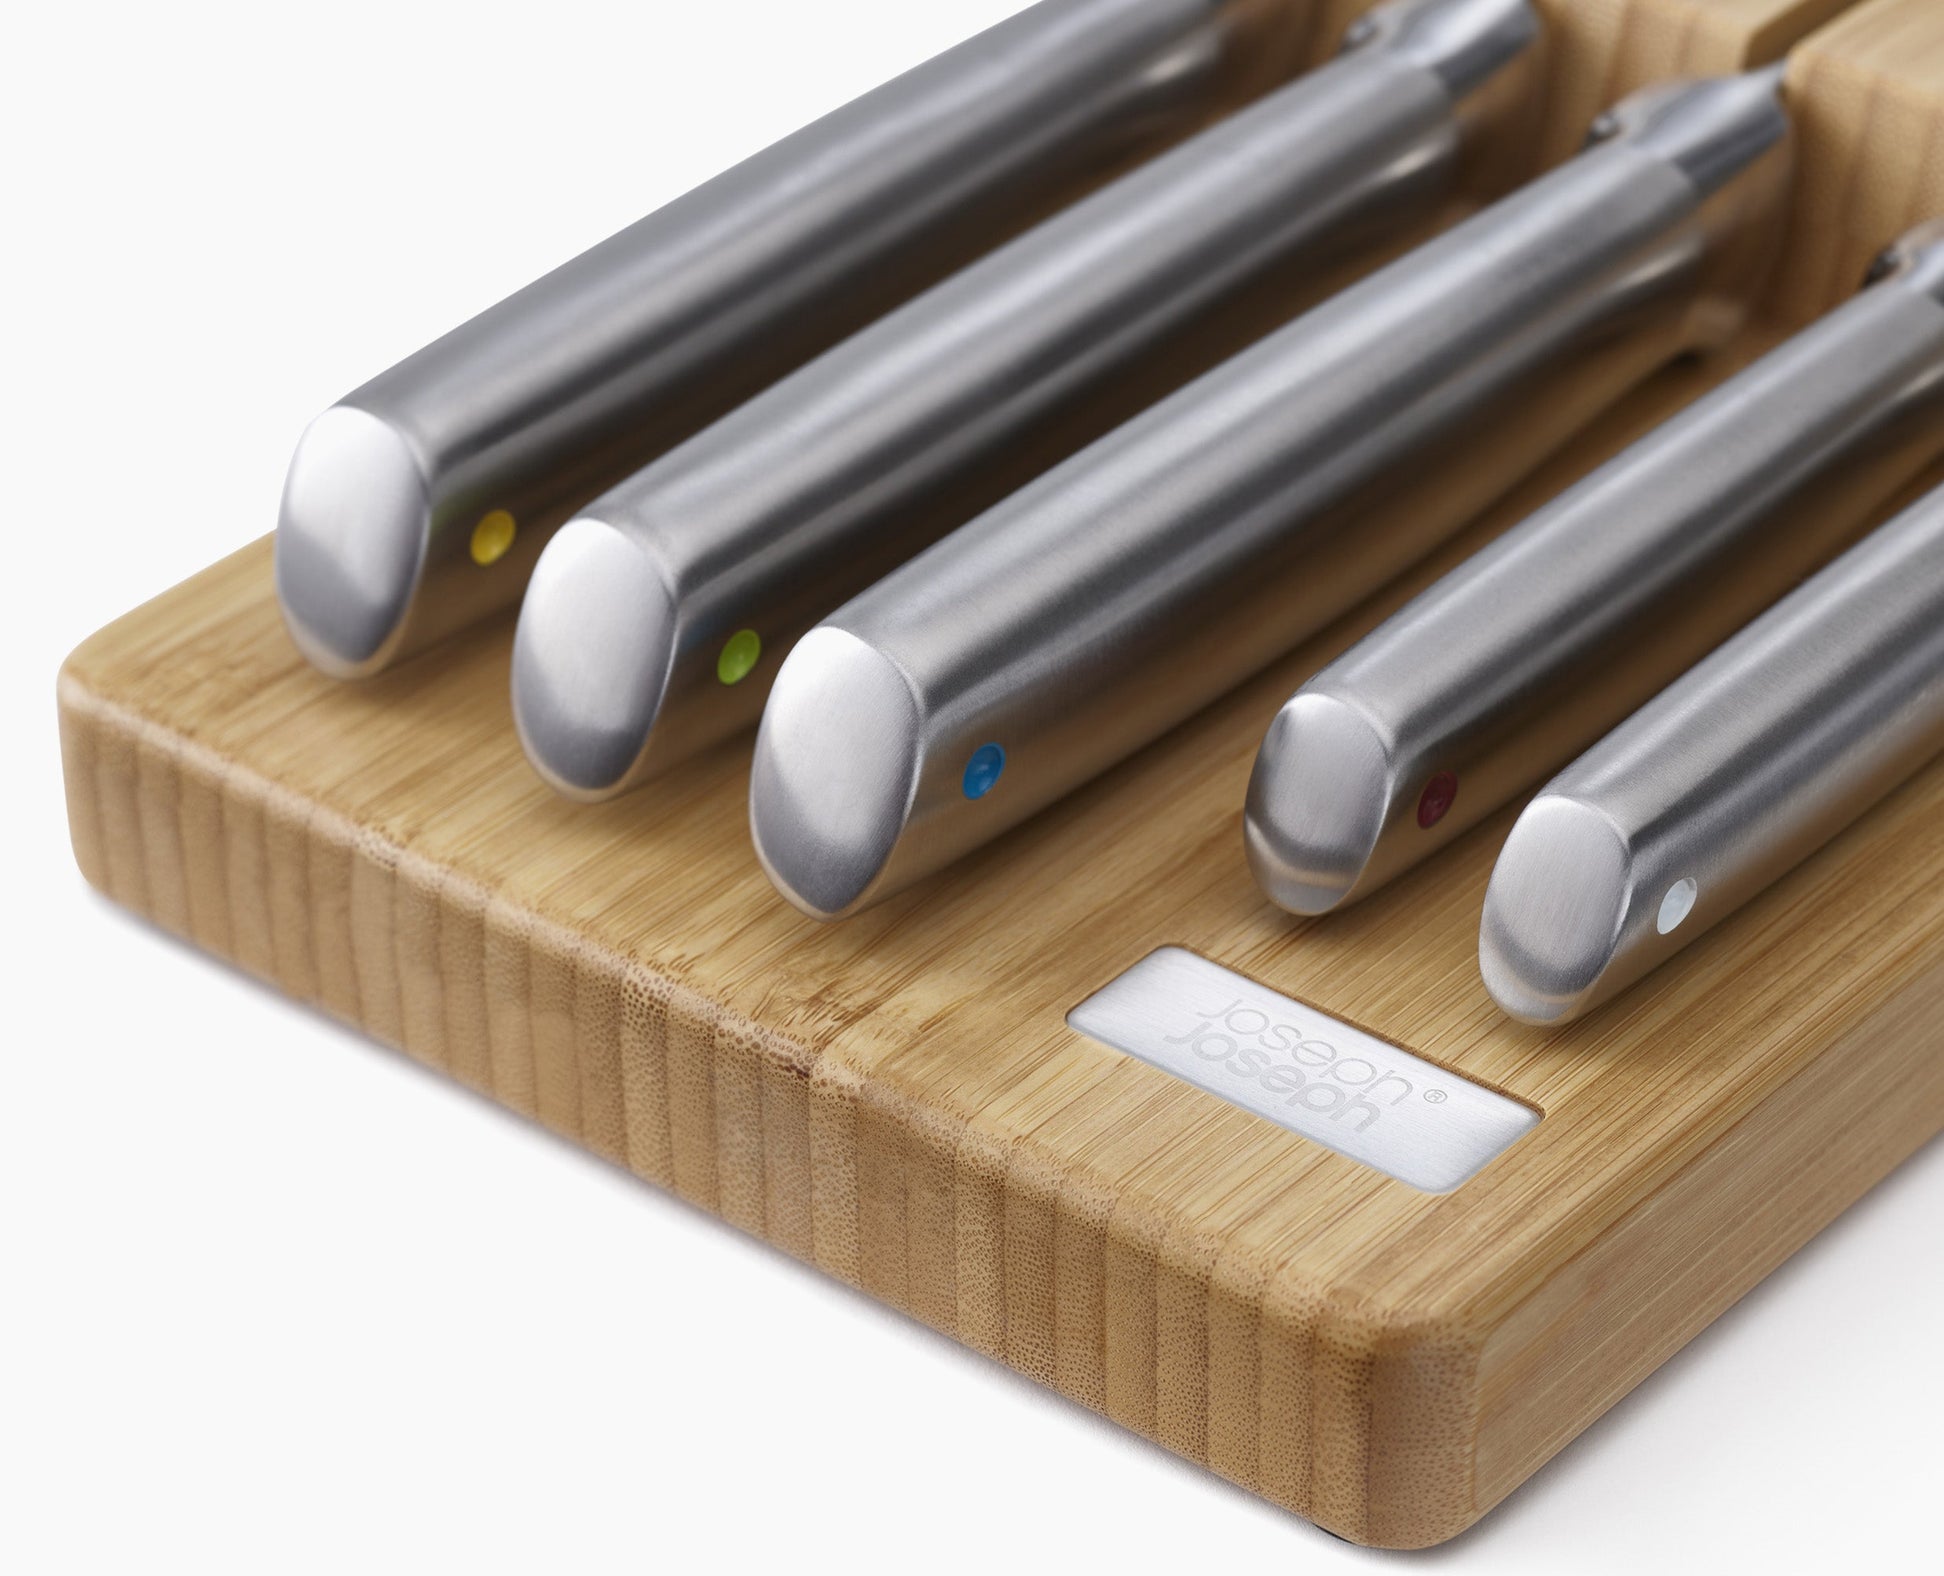 Joseph & Joseph, Set di coltelli in acciaio Elevate™ con vassoio portaoggetti da cassetto in bambù